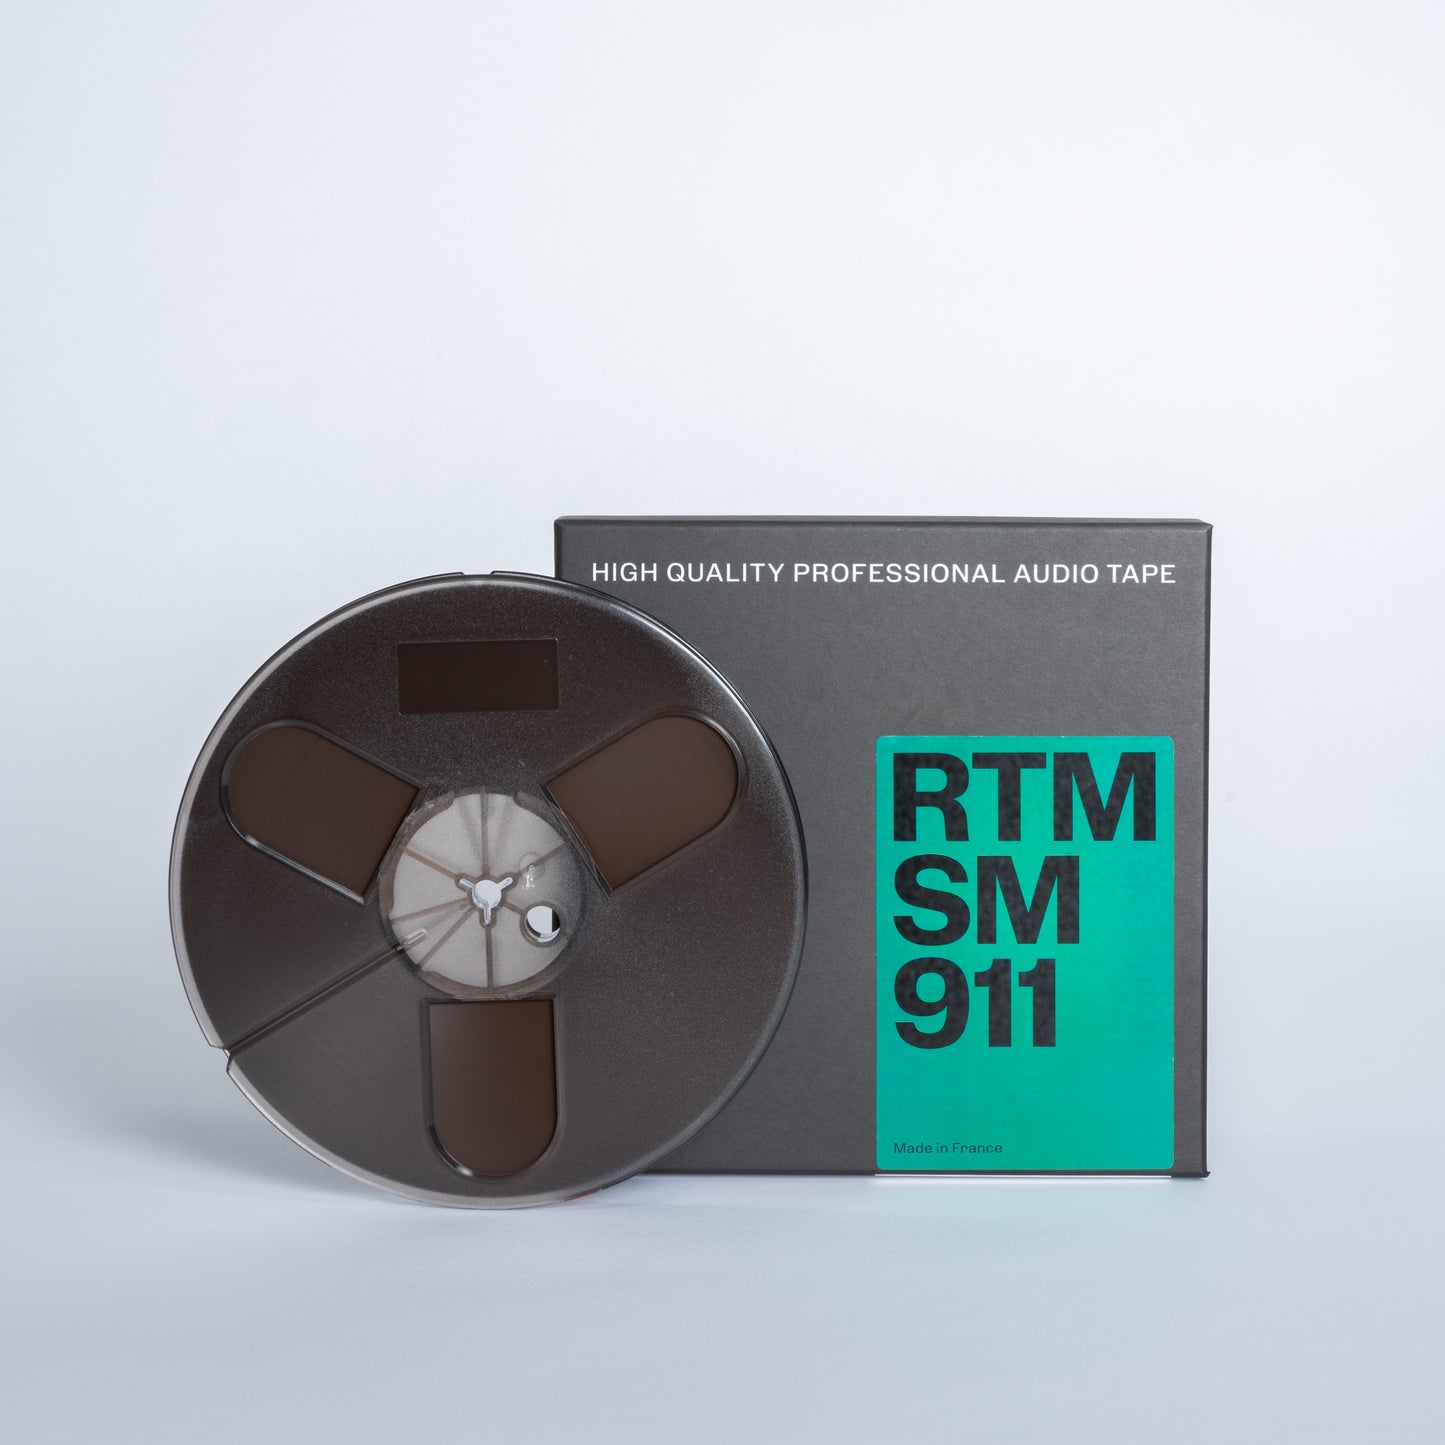 ¼” Tape / Plastic / 366m / 7" Diameter / Trident